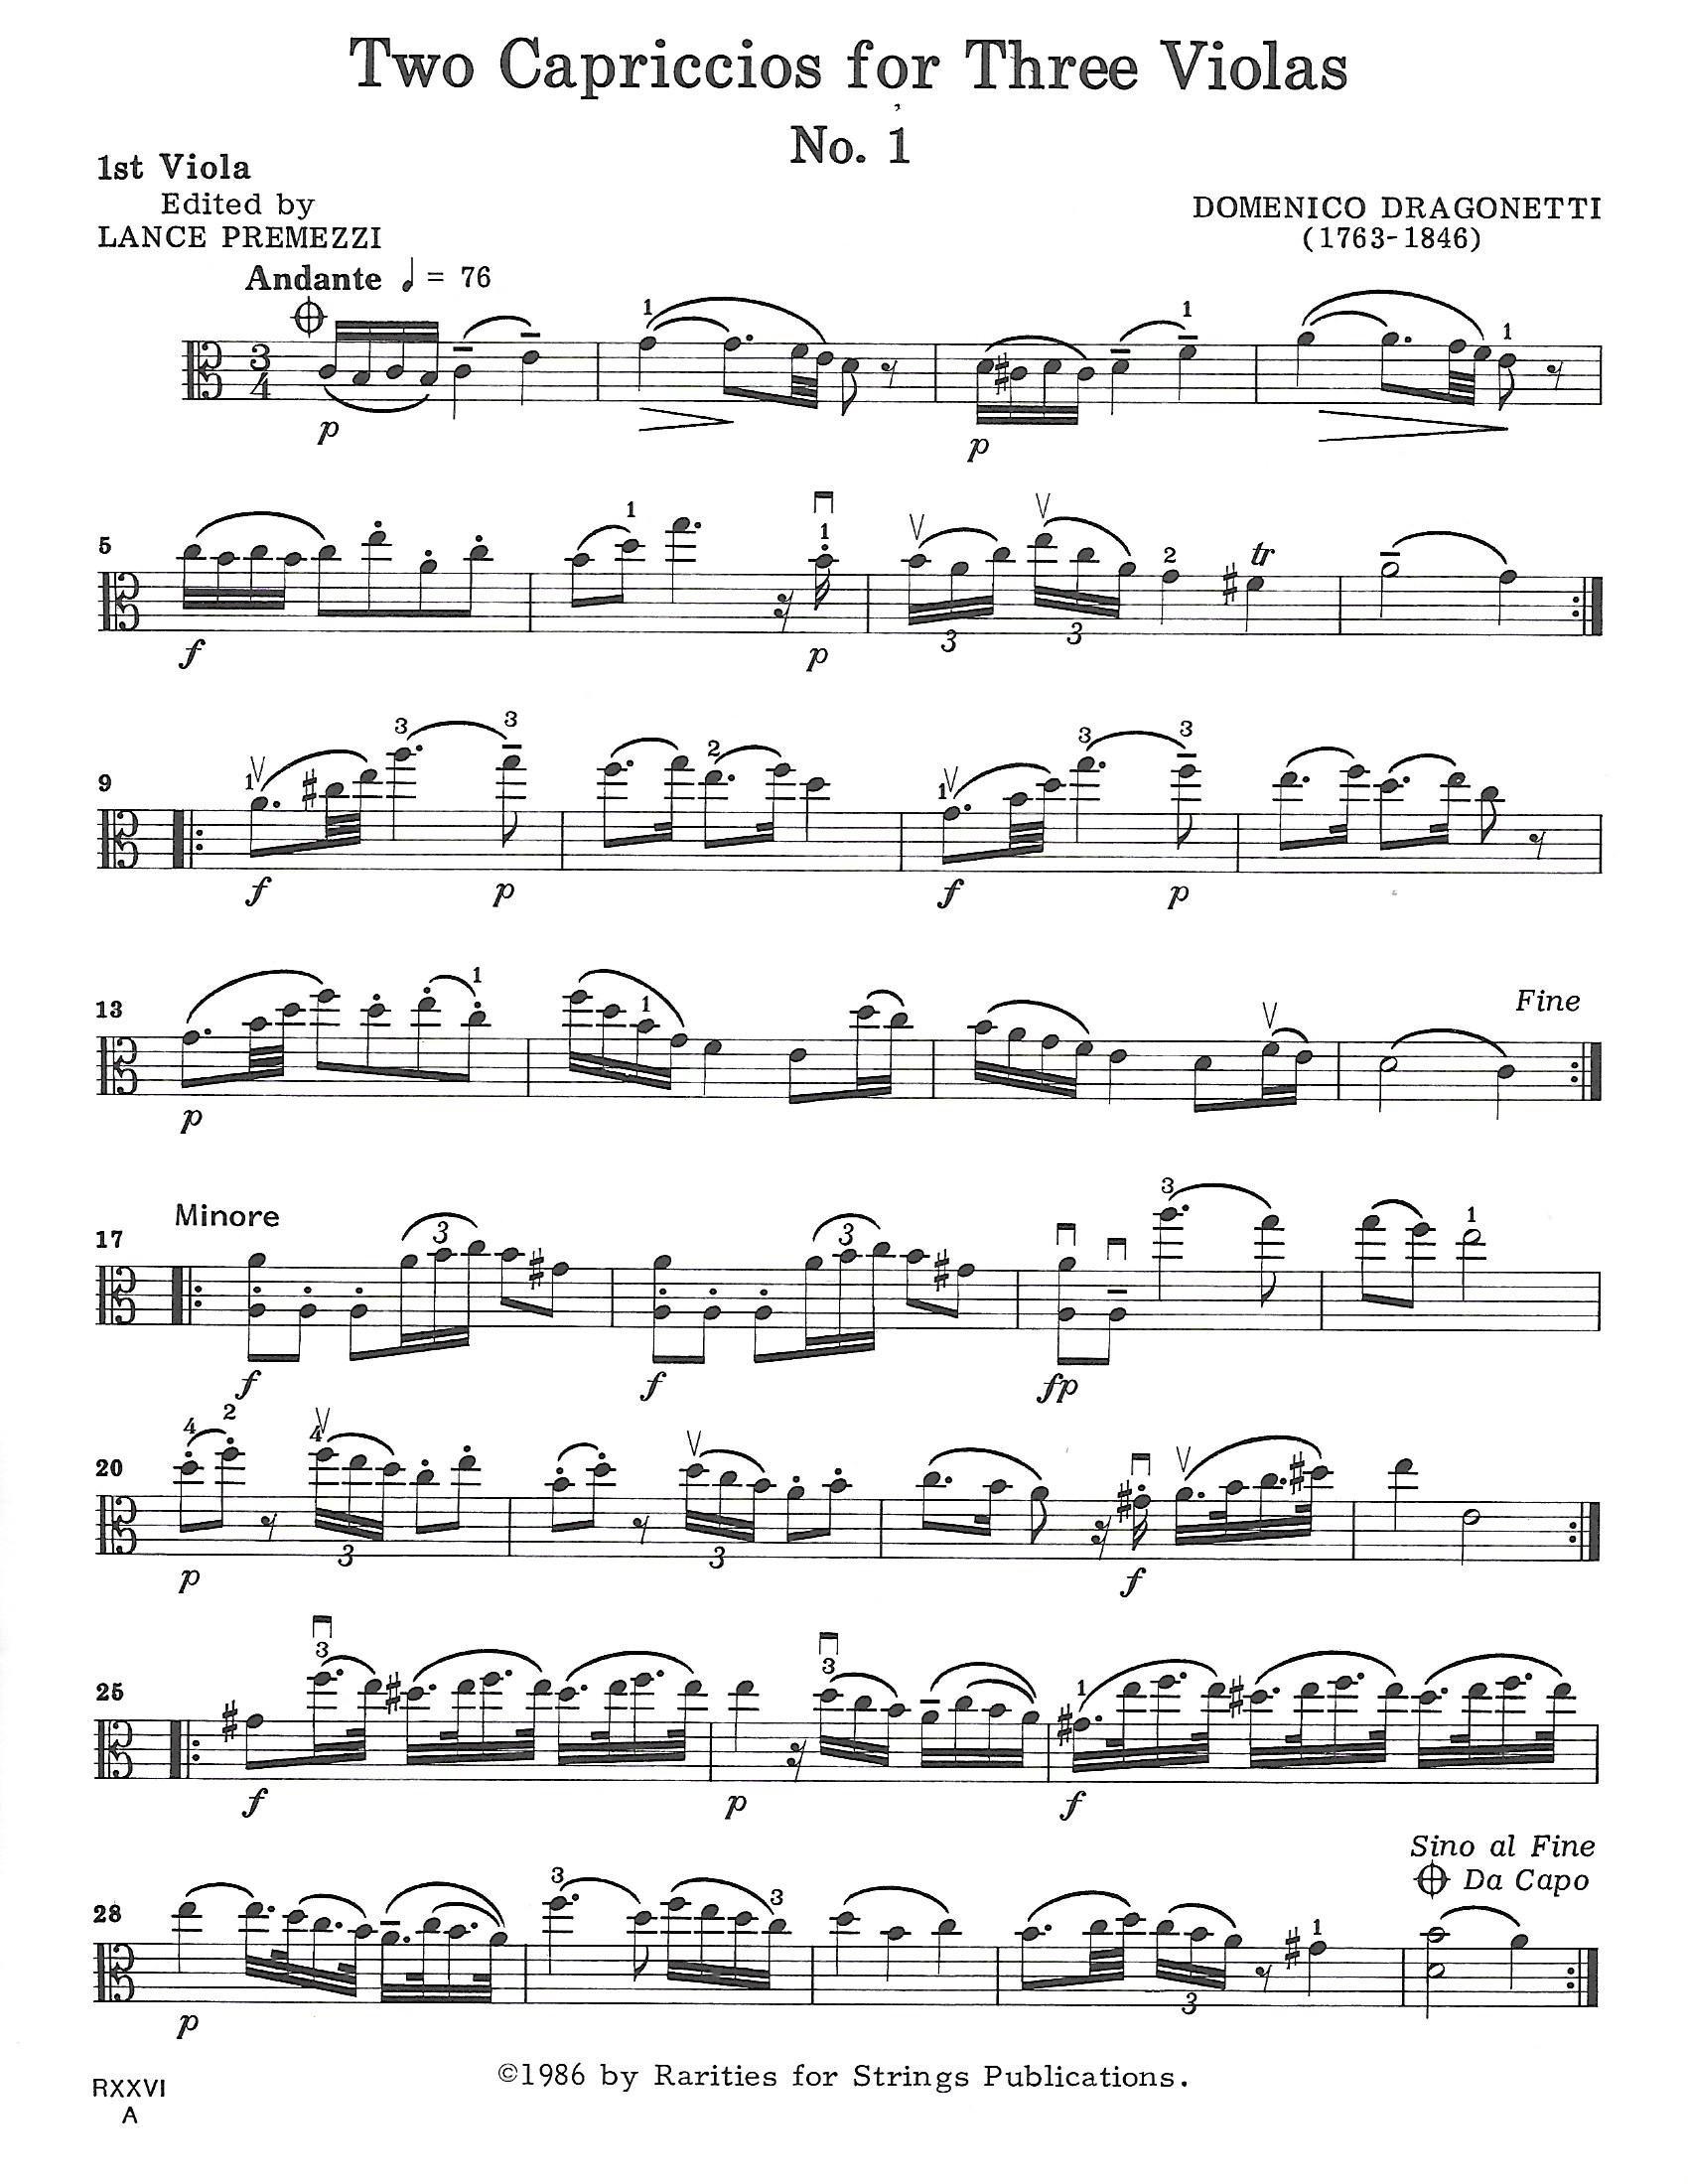 Dragonetti, Domenico - Two Capriccios for Three Violas - Music